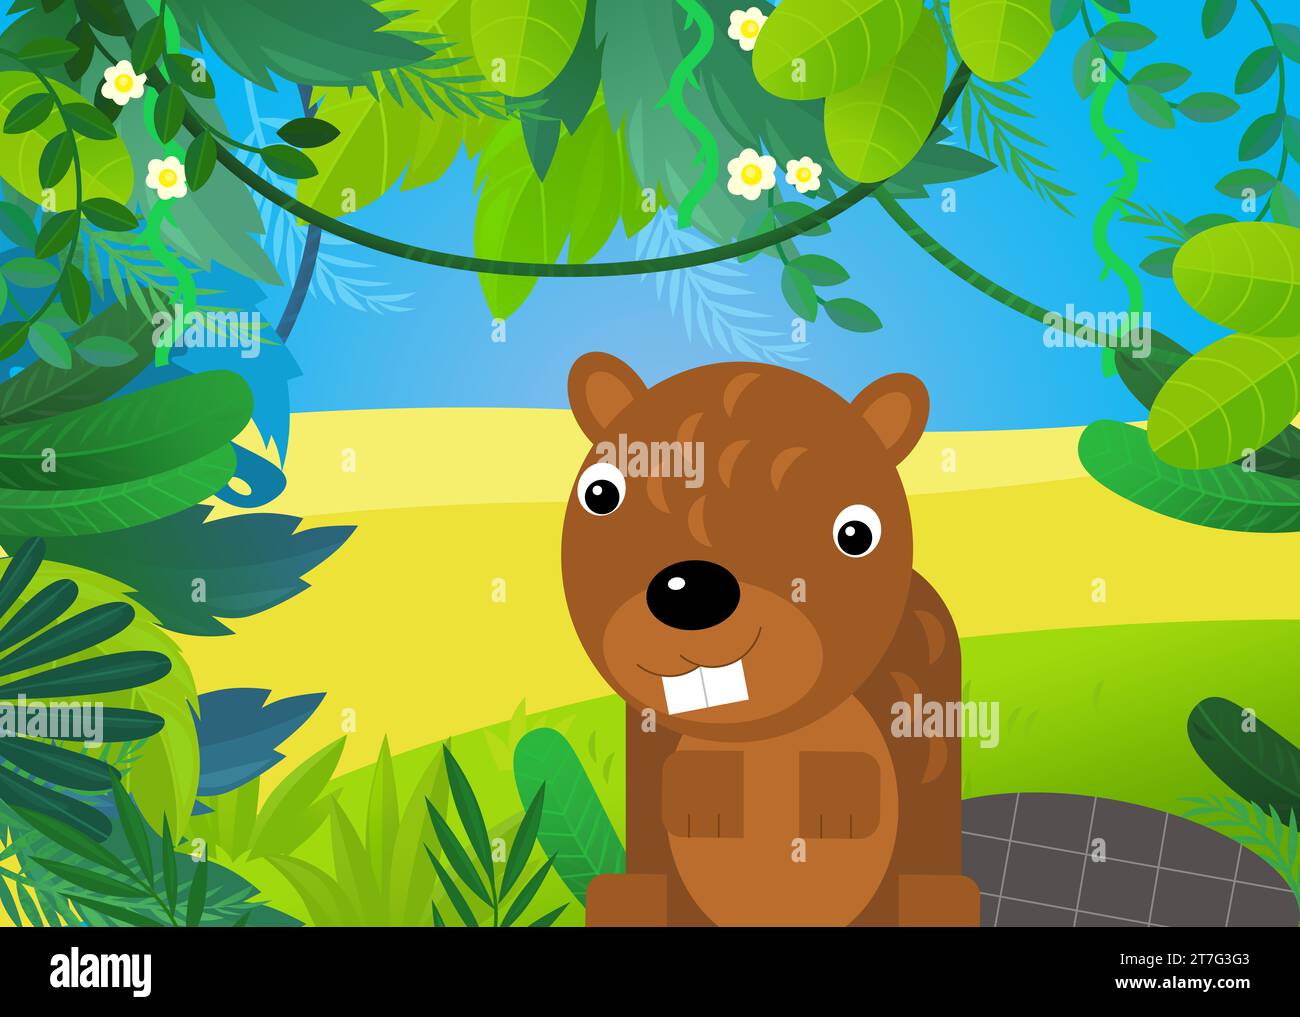 scène de dessin animé avec illustration de castor forestier et animal pour les enfants Banque D'Images